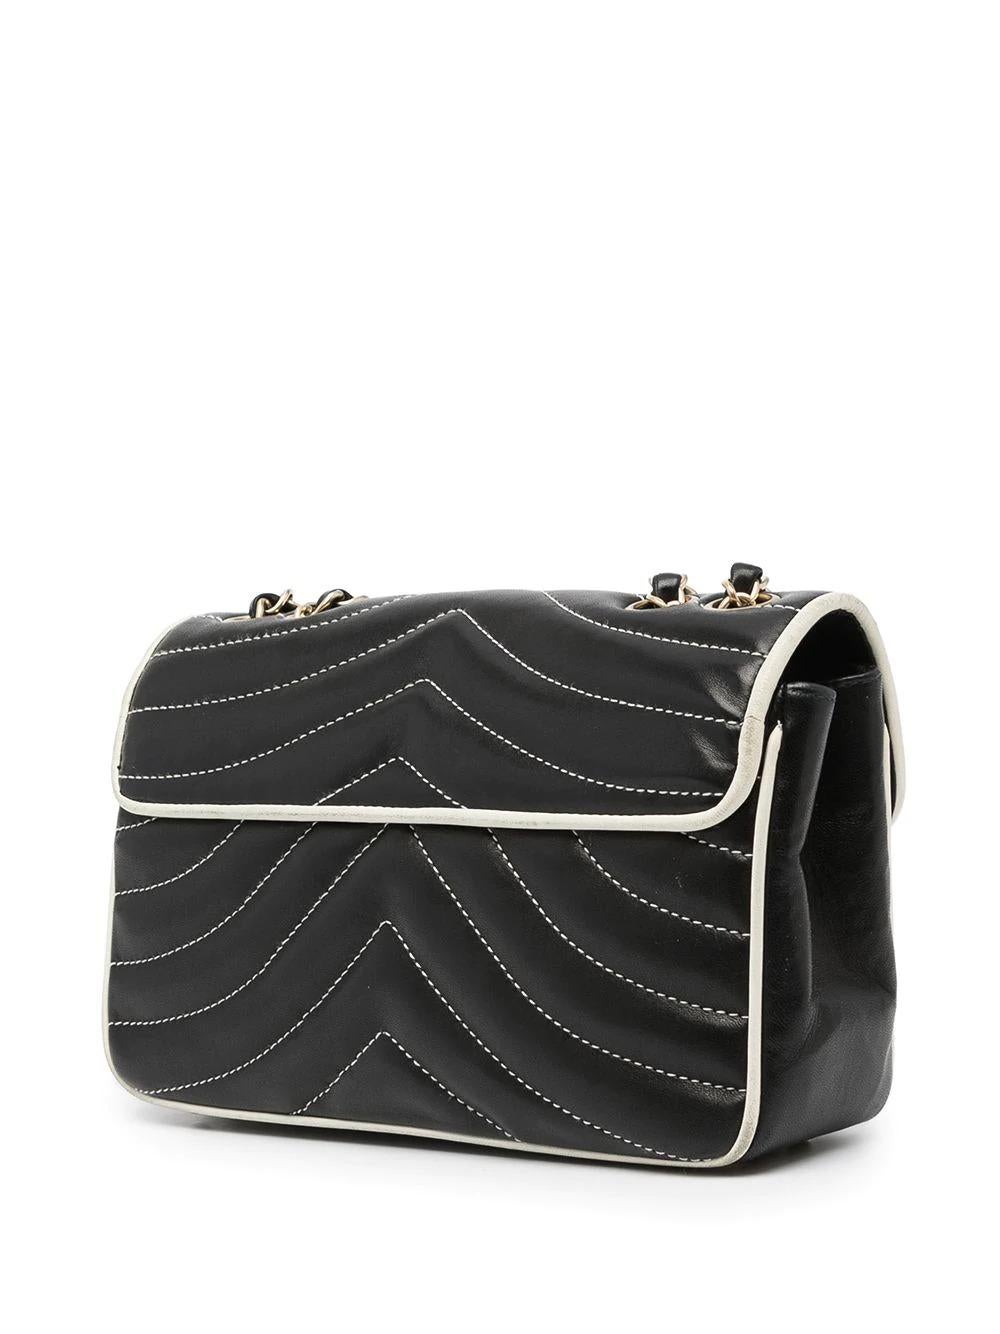 Women's Chanel Black Chevron Single Flap Bag 2014